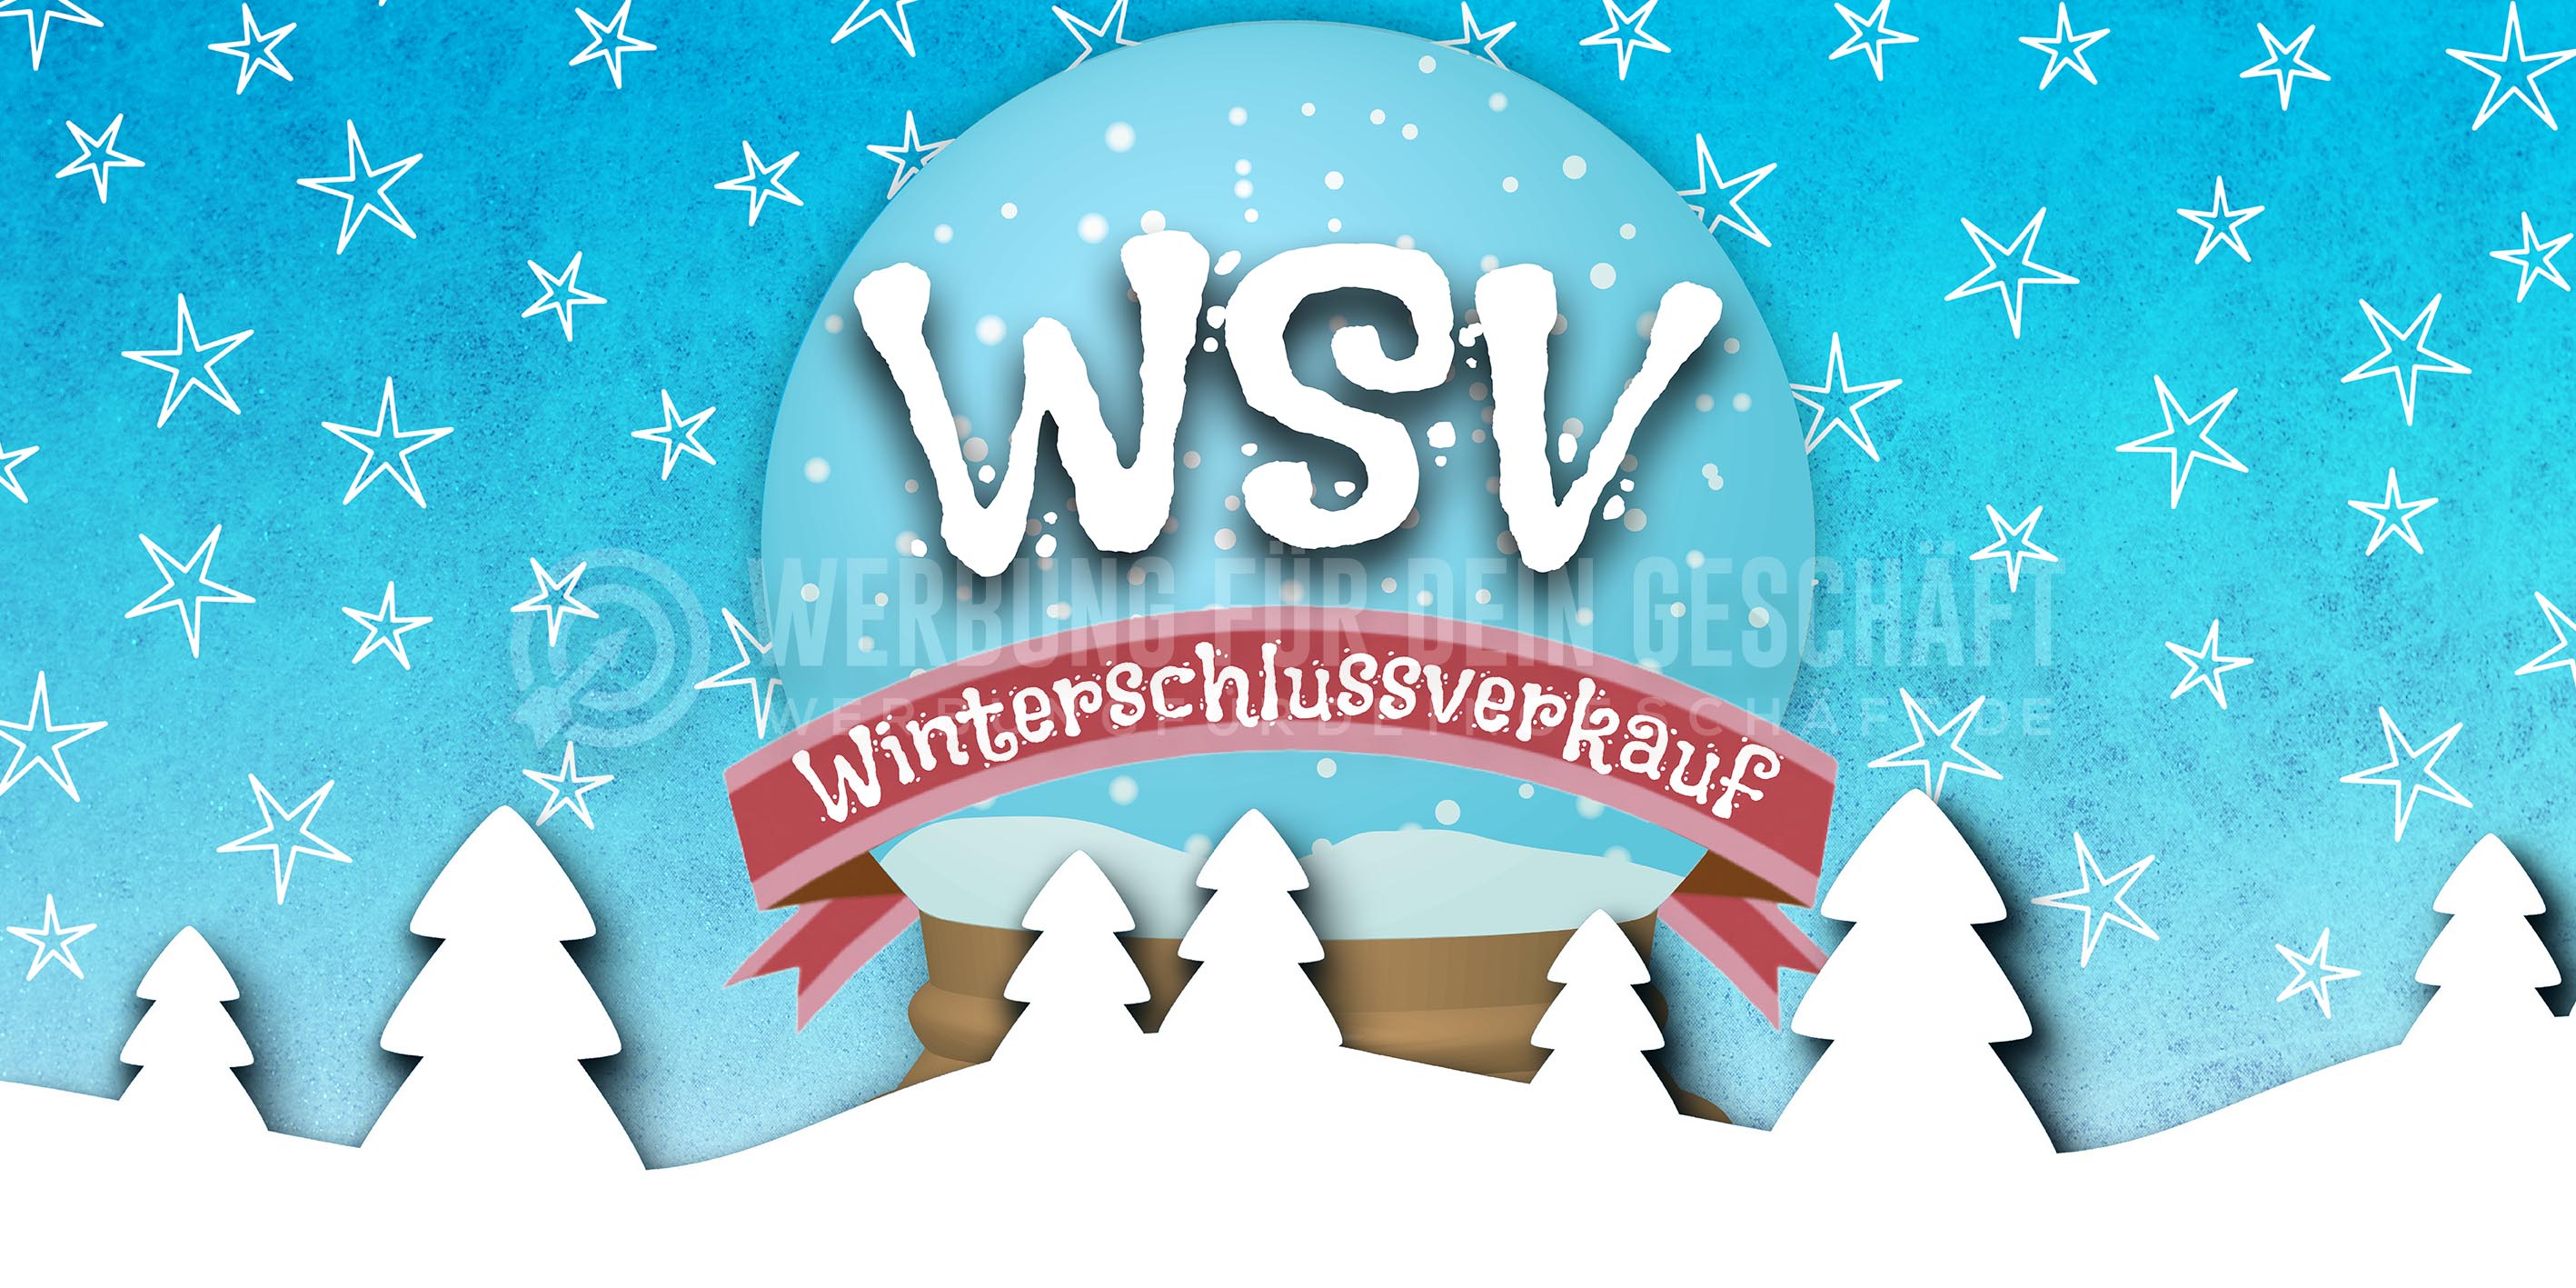 2:1 | WSV Winterschlussverkauf Werbebanner | Plakat erstellen | 2 zu 1 Format